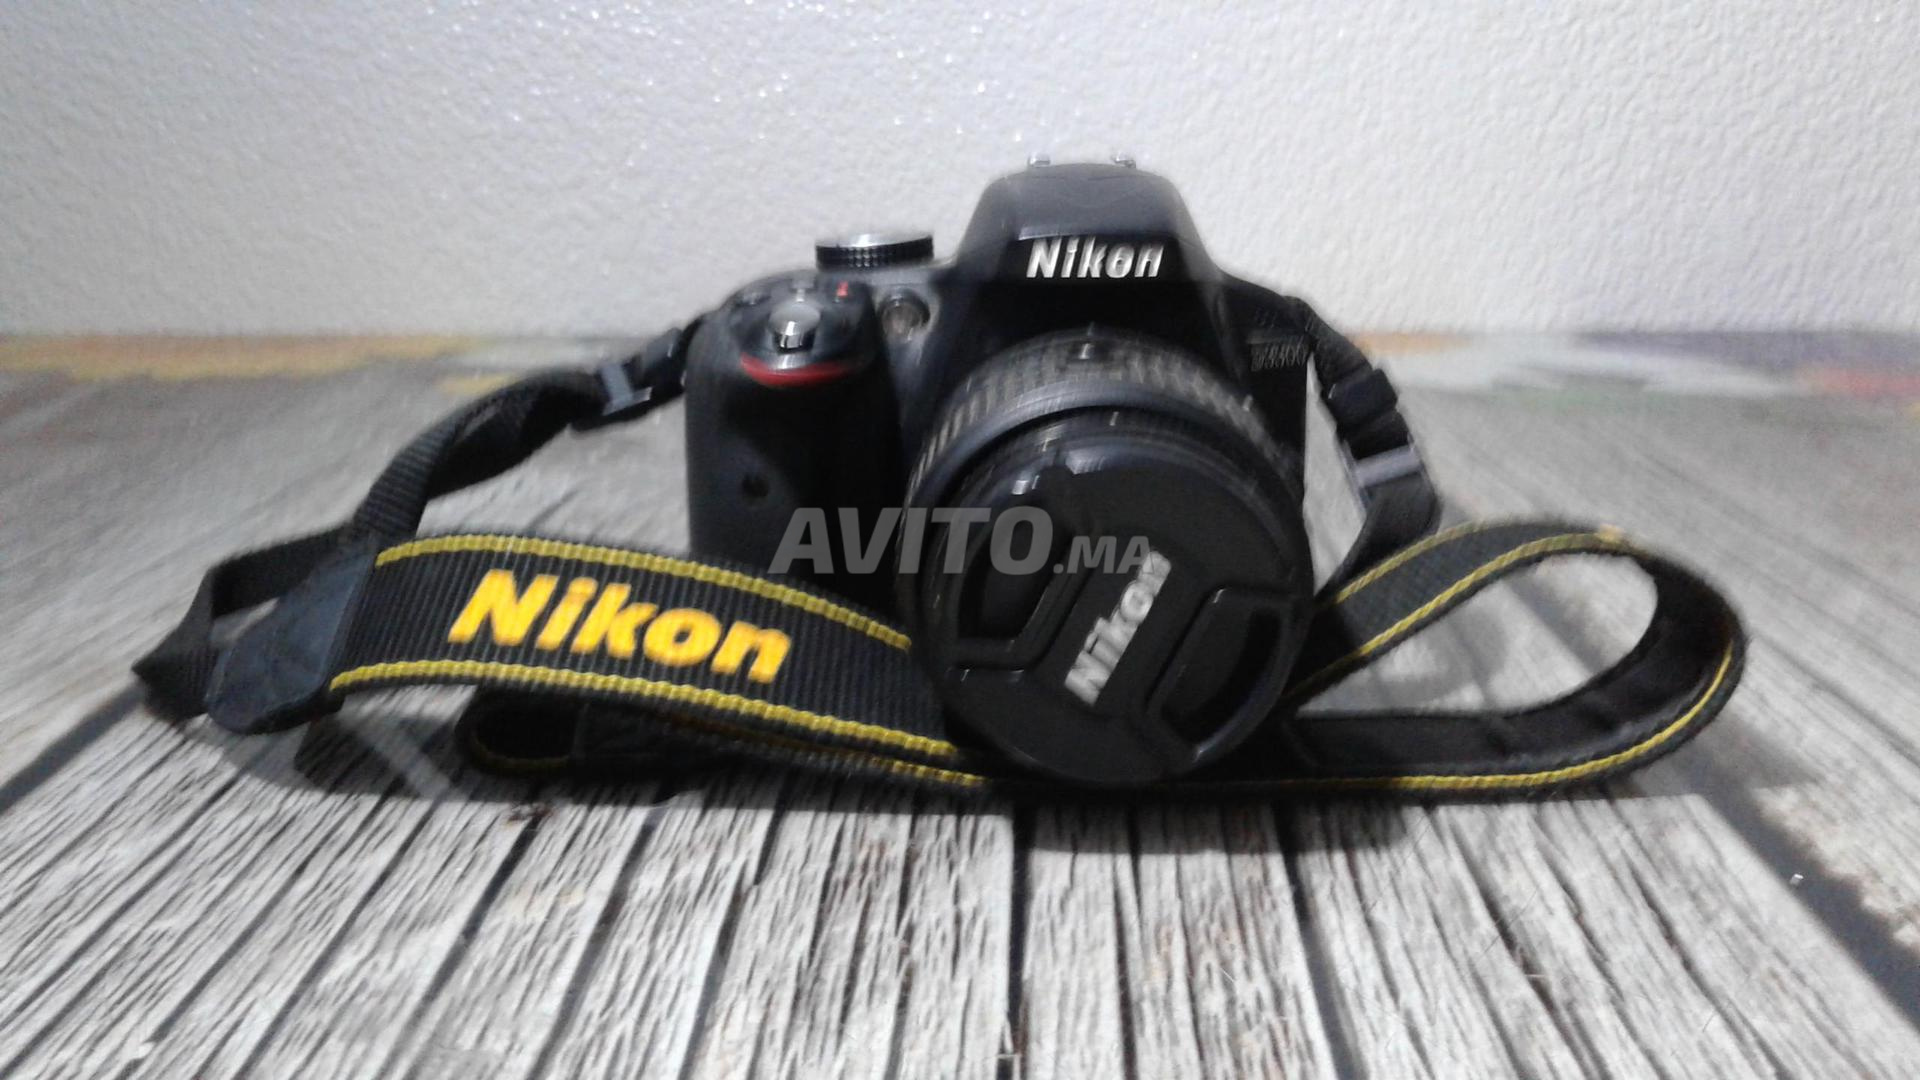 Nikon D5300 Appareil photo numérique - Aganet Info